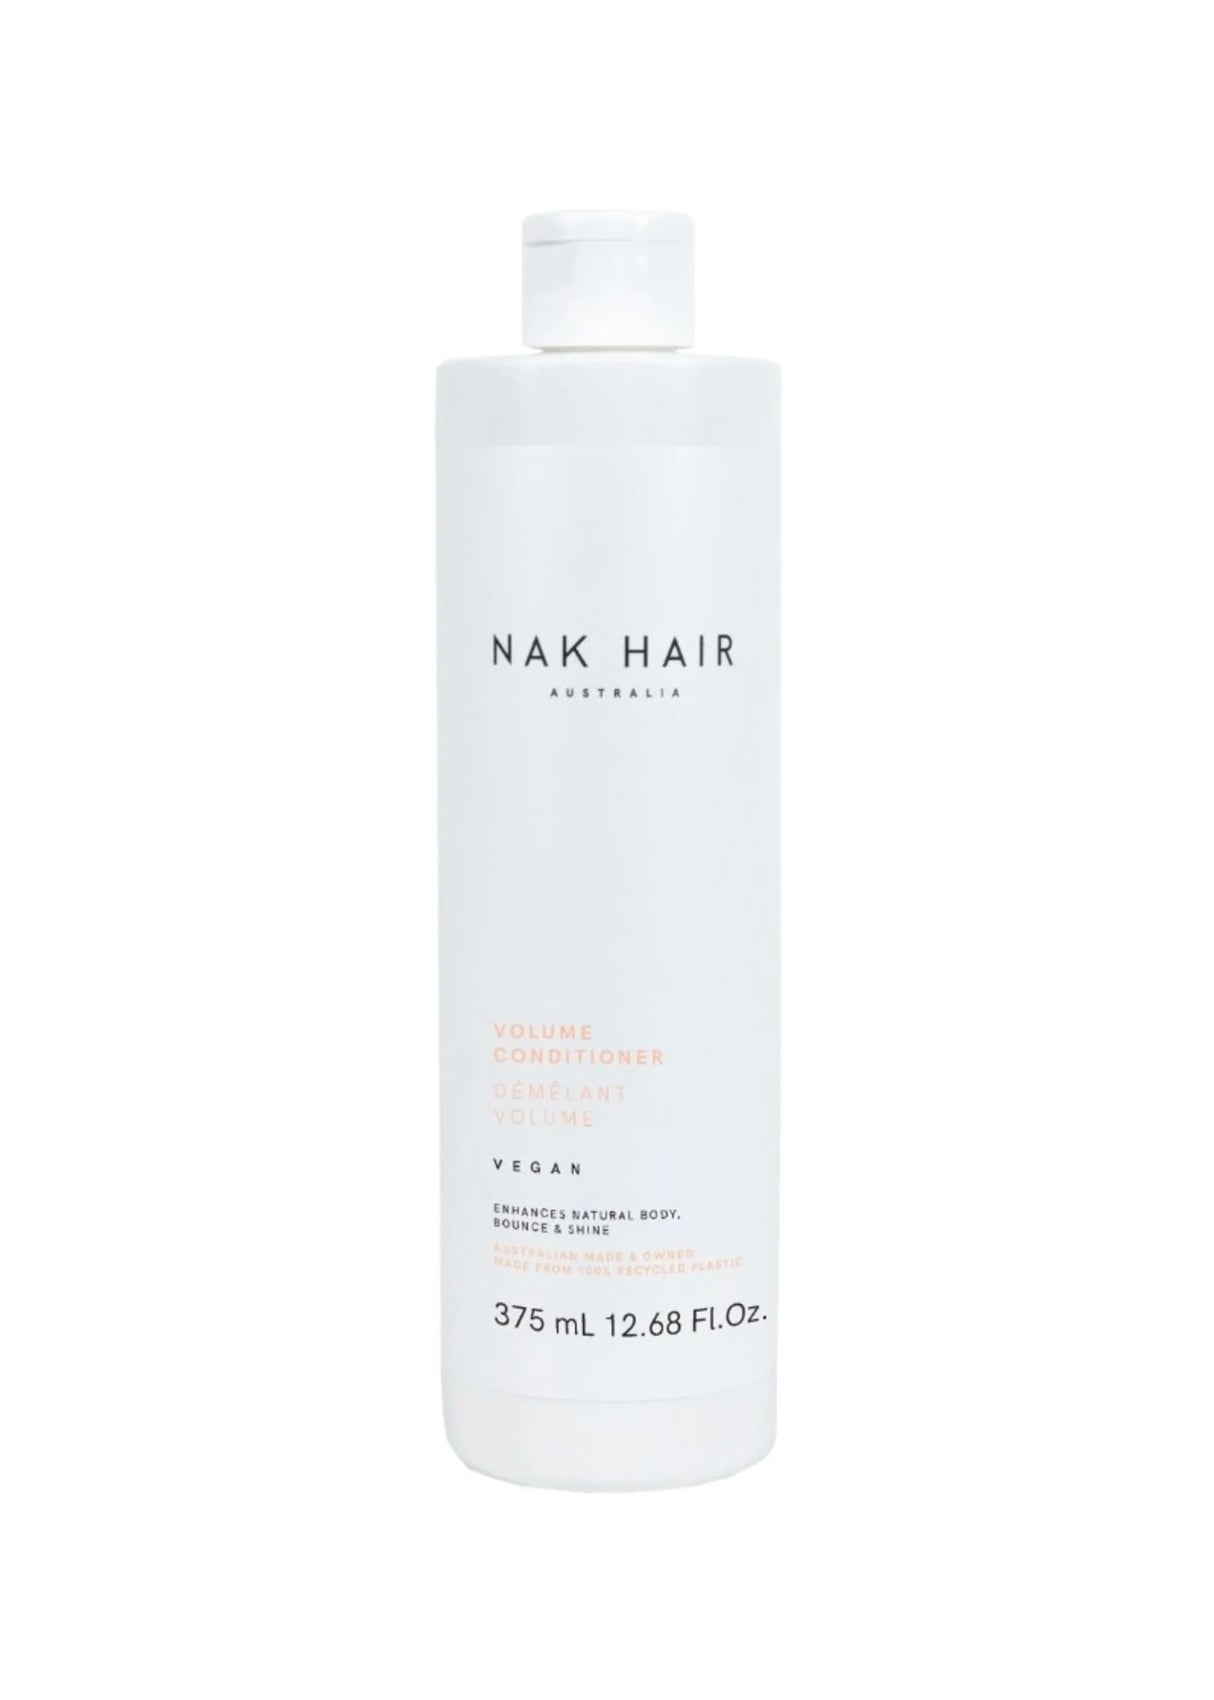 Nak Hair Volume Conditioner 375ml